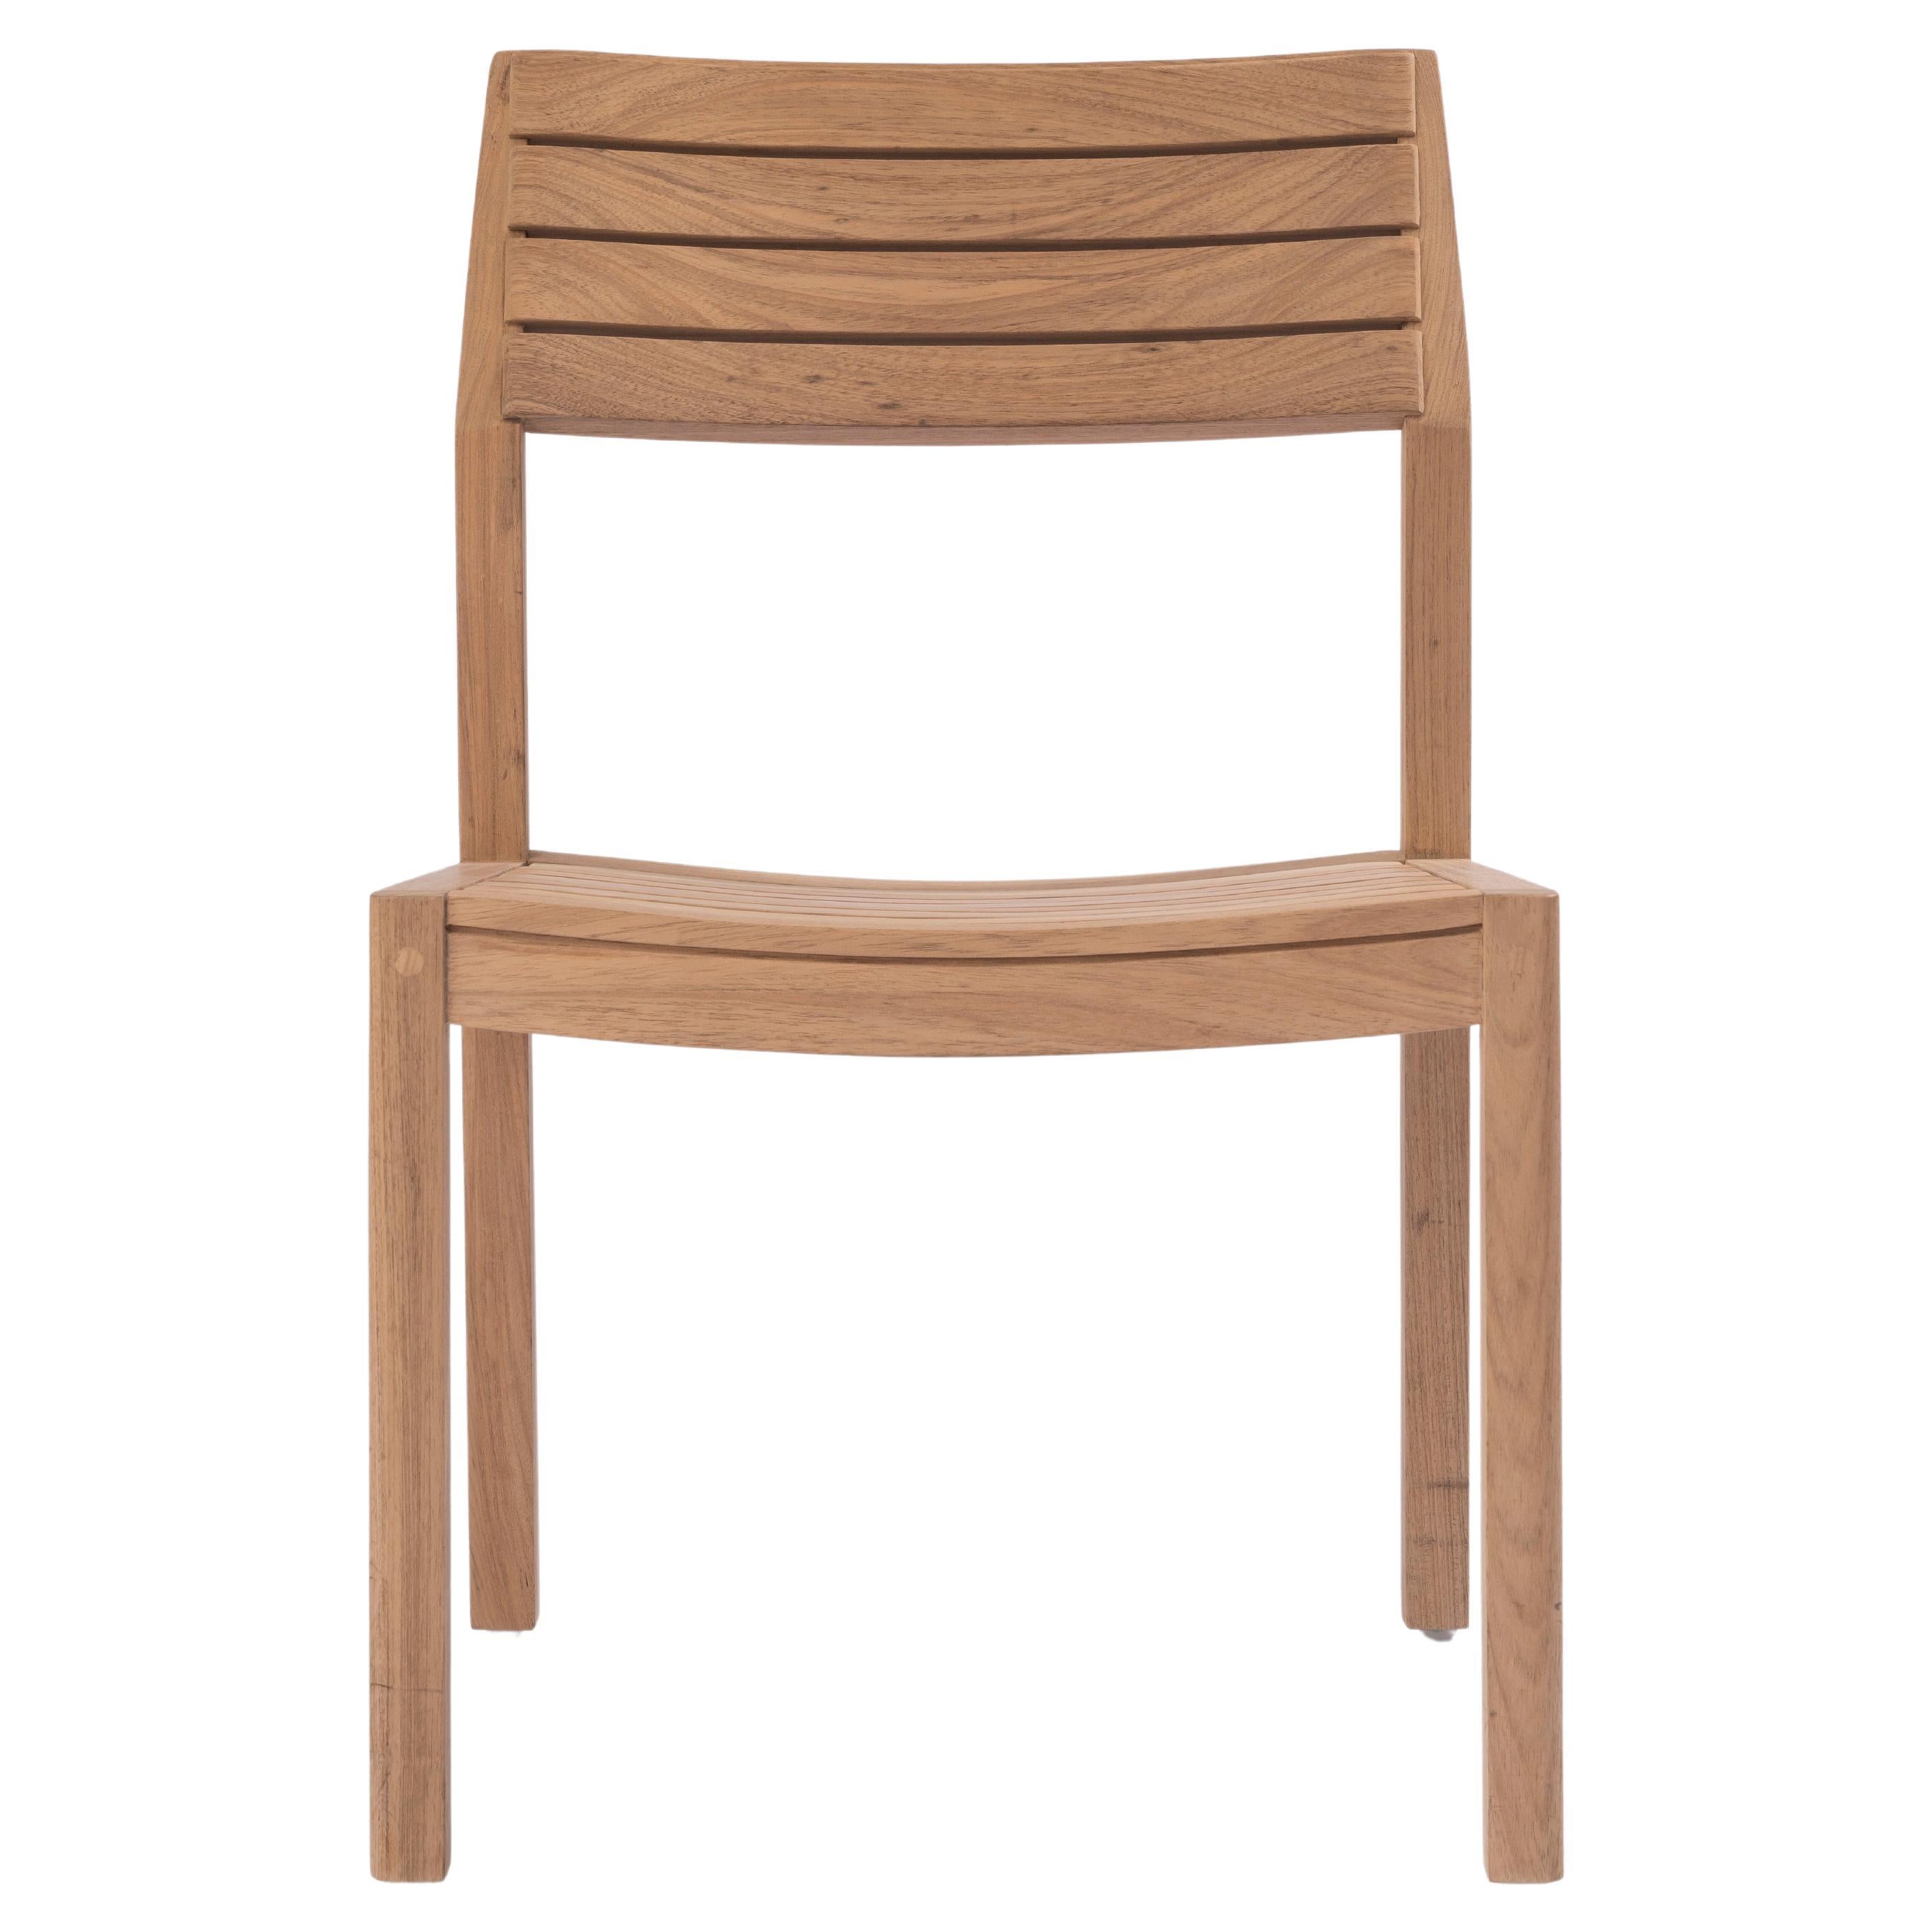 Chaise en bois massif en teck, avec lattes en bois, résistante à l'extérieur, pour l'extérieur 